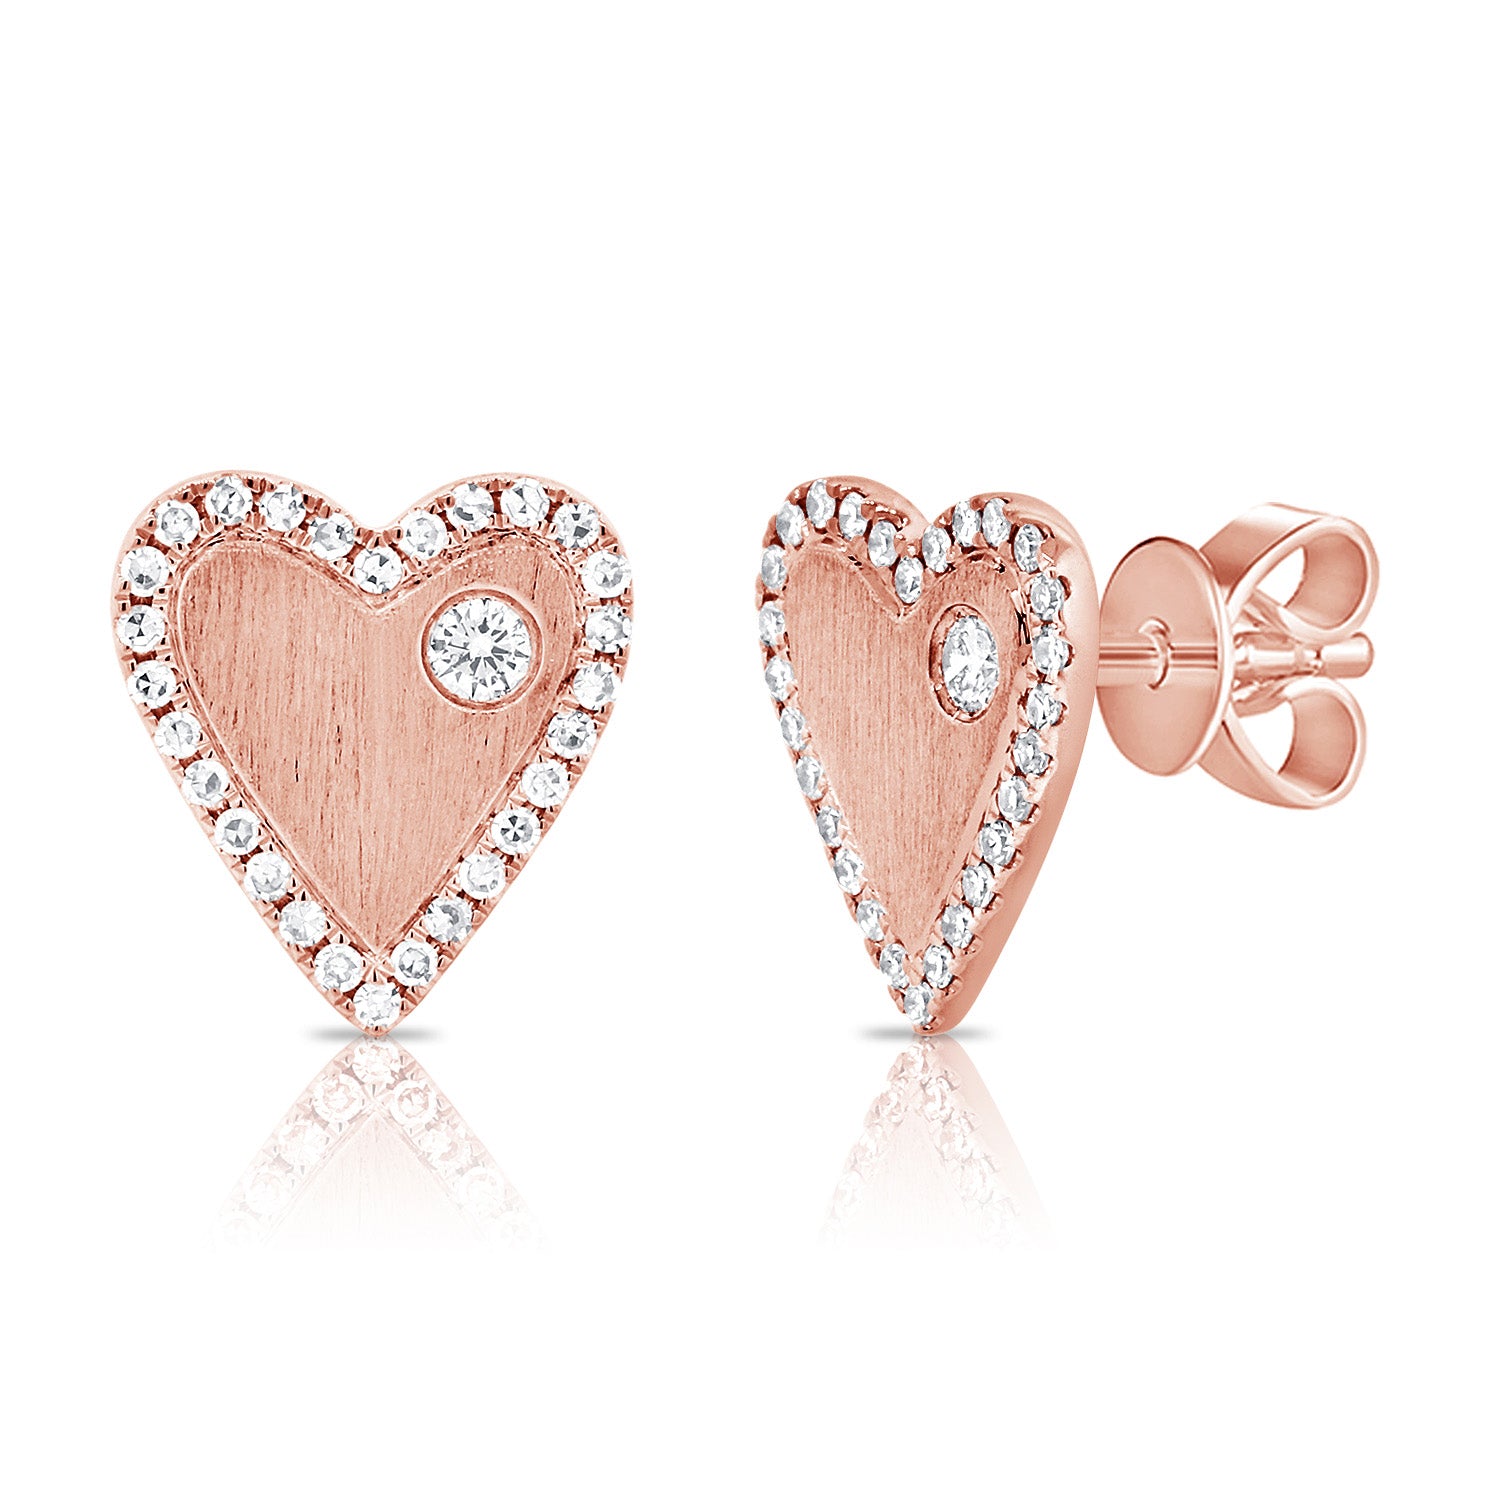 Gold & Diamond Heart Earrings